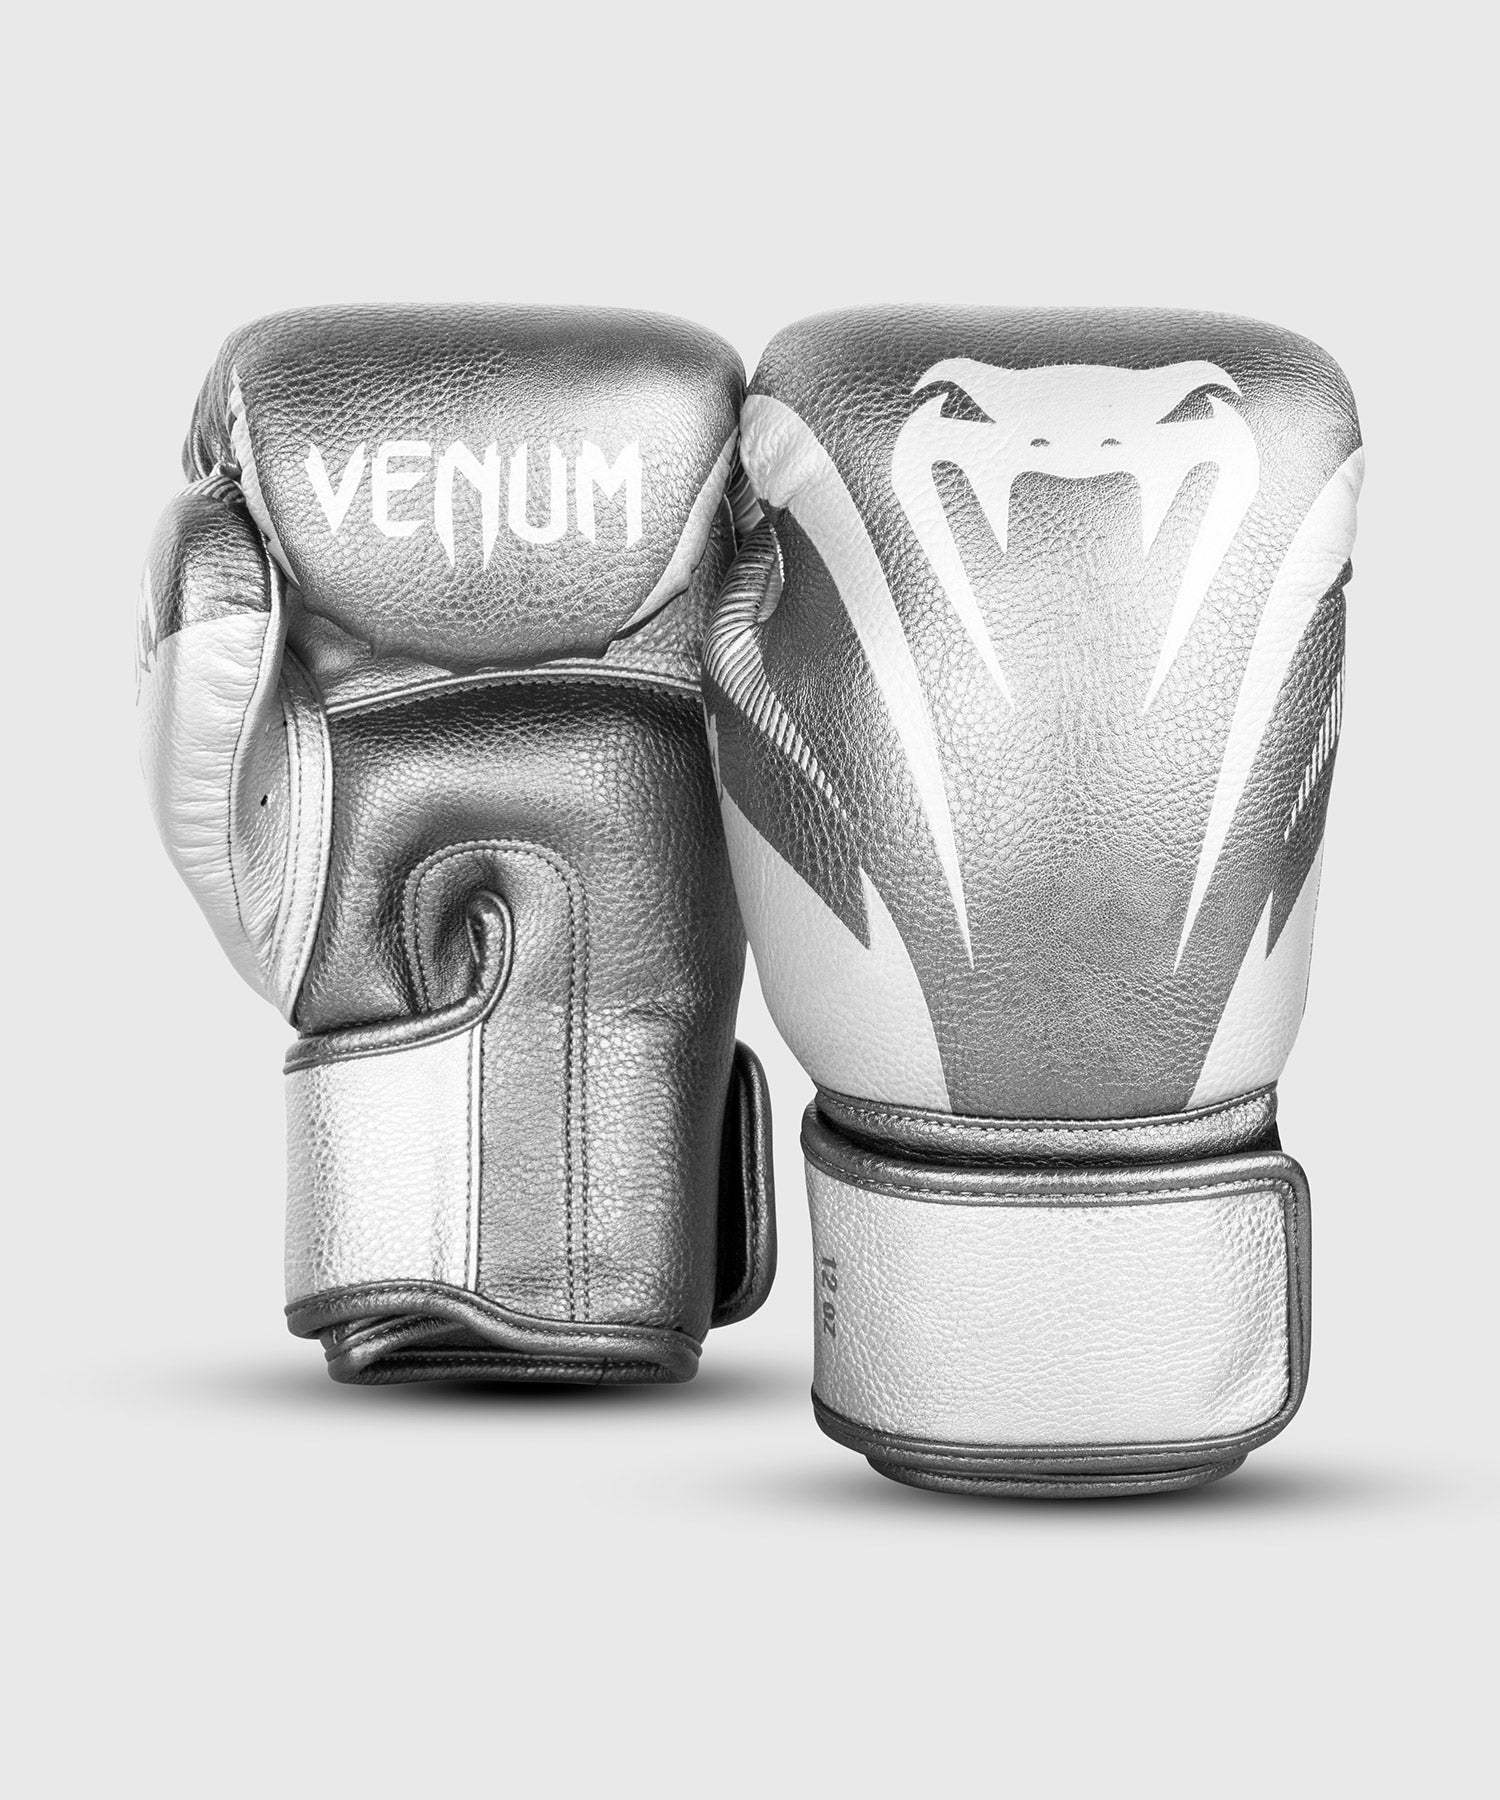 Gants de boxe Venum Impact